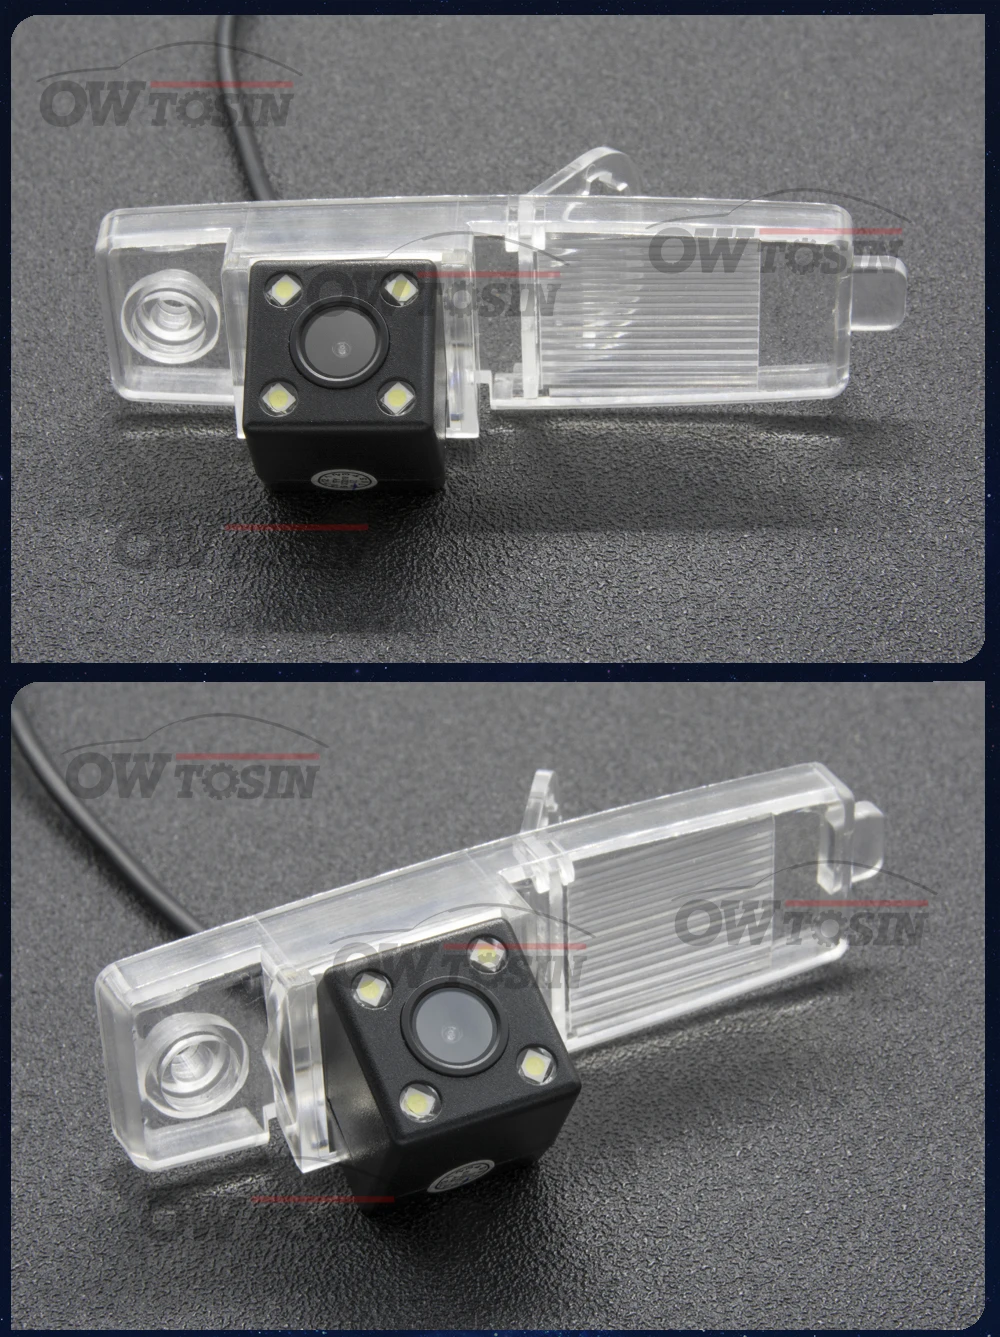 Фиксированная или динамическая траектория камера заднего вида для Toyota Highlander Kluger RAV4 RAV 4 2009 2010 2011 2012 Автостоянка аксессуары